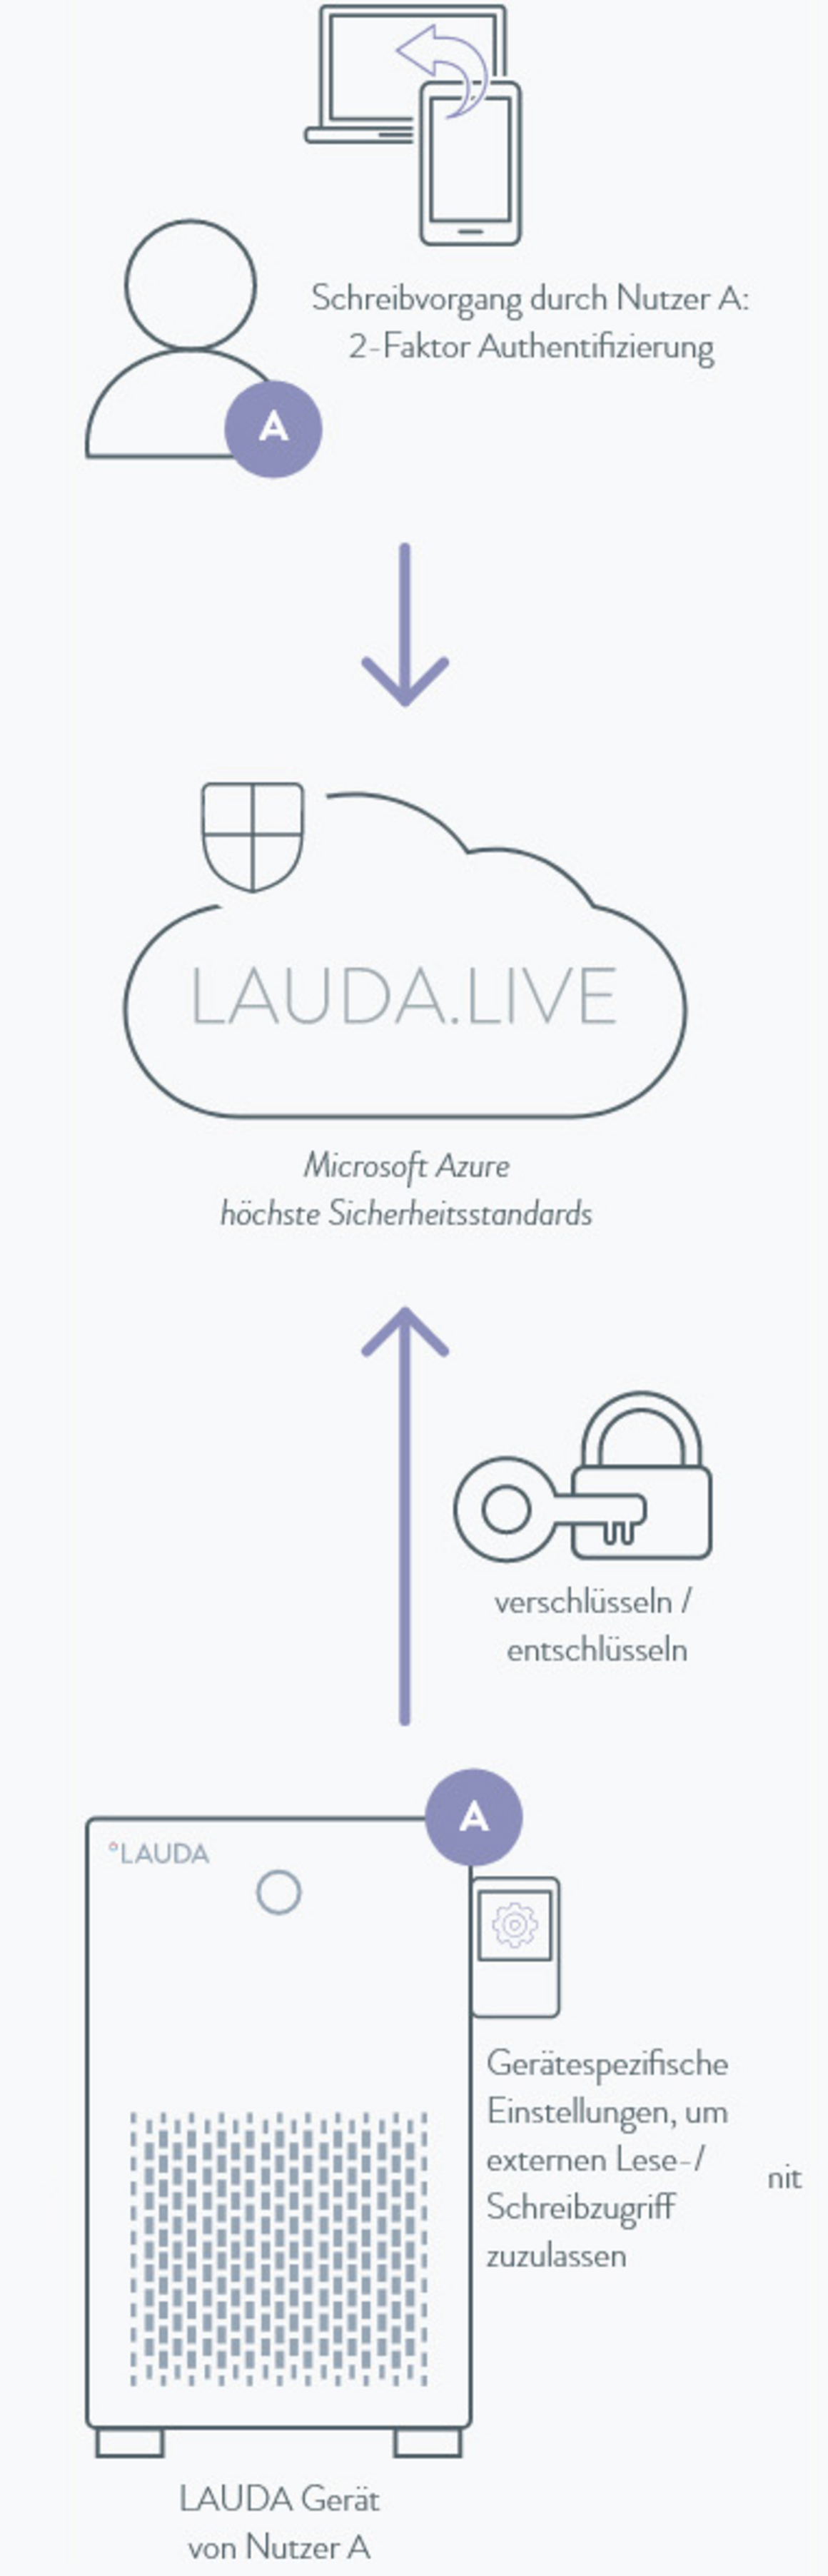 Skizzenhafte Darstellung der LAUDA.LIVE Sicherheitsfunktionen.